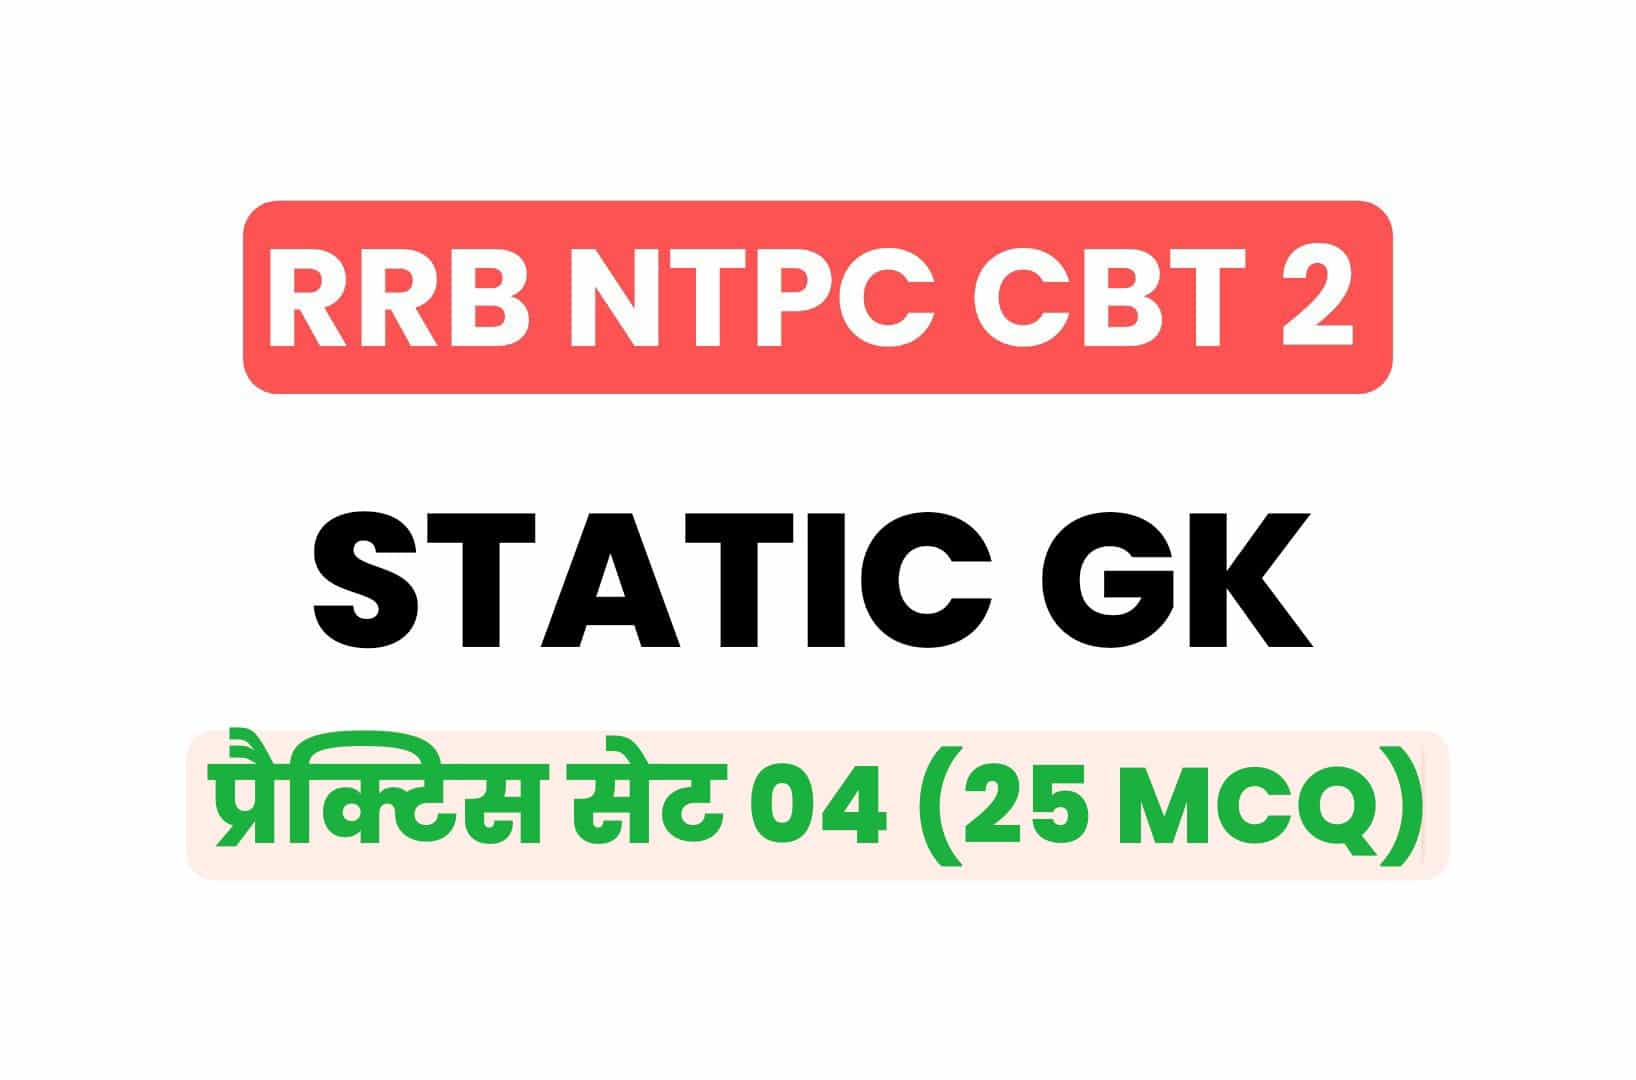 RRB NTPC CBT 2 Static GK प्रैक्टिस सेट 04: परीक्षा में पूछे जा रहे इन महत्वपूर्ण प्रश्नों का करें अध्ययन